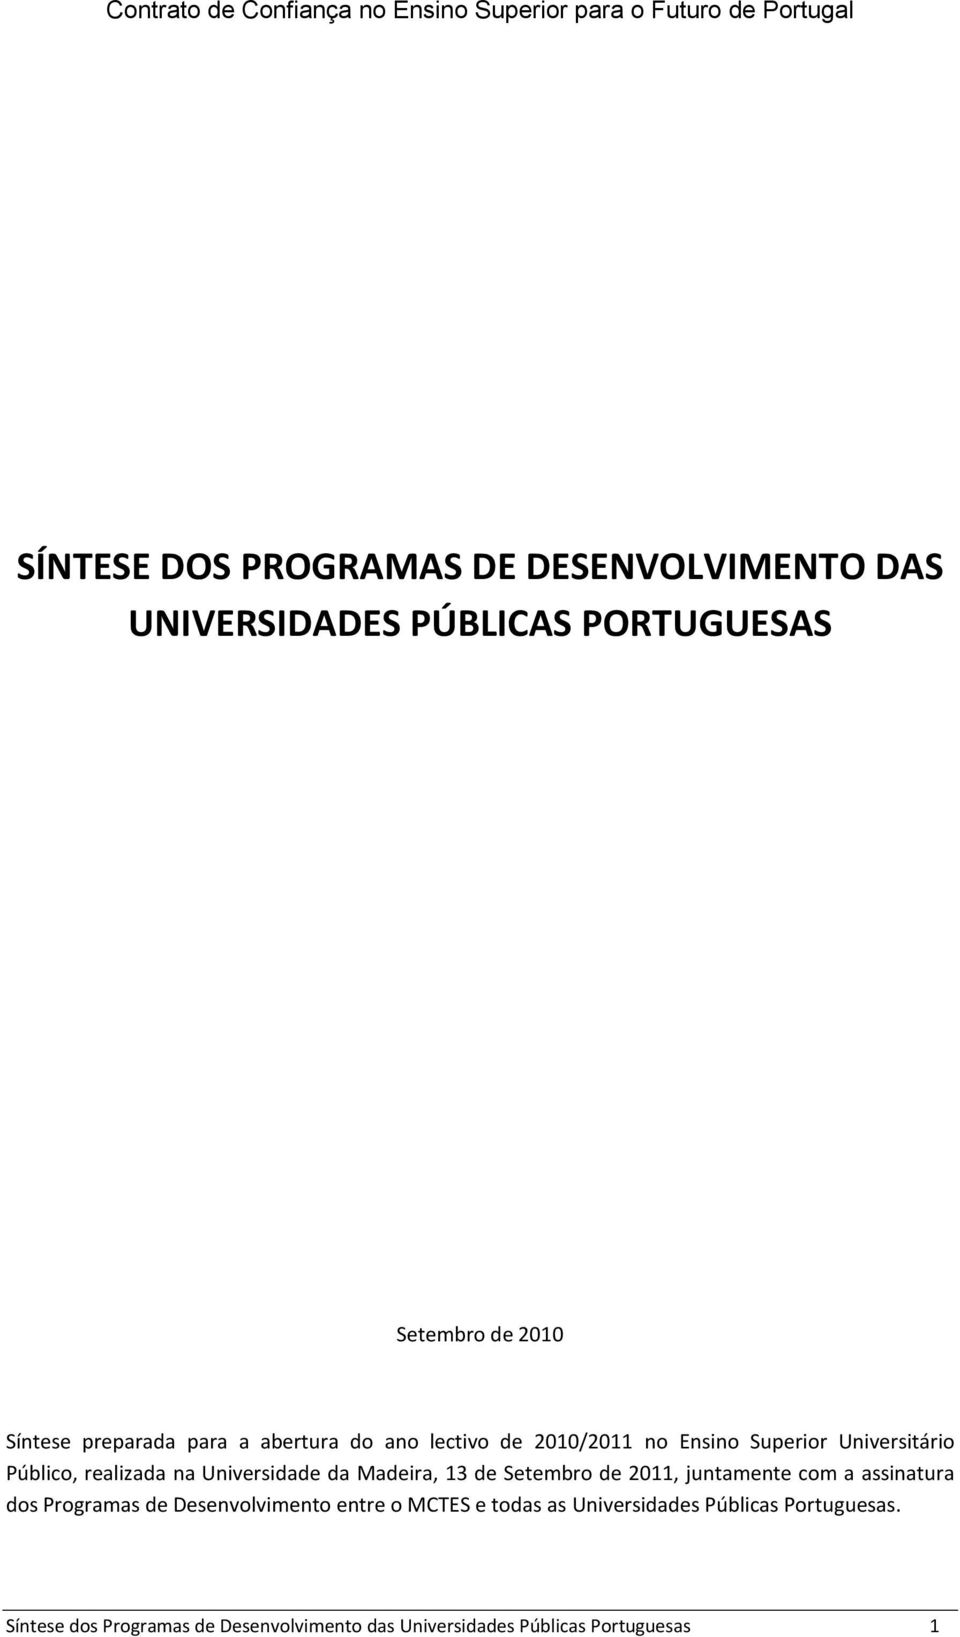 Público, realizada na Universidade da Madeira, 13 de Setembro de 2011, juntamente com a assinatura dos Programas de Desenvolvimento